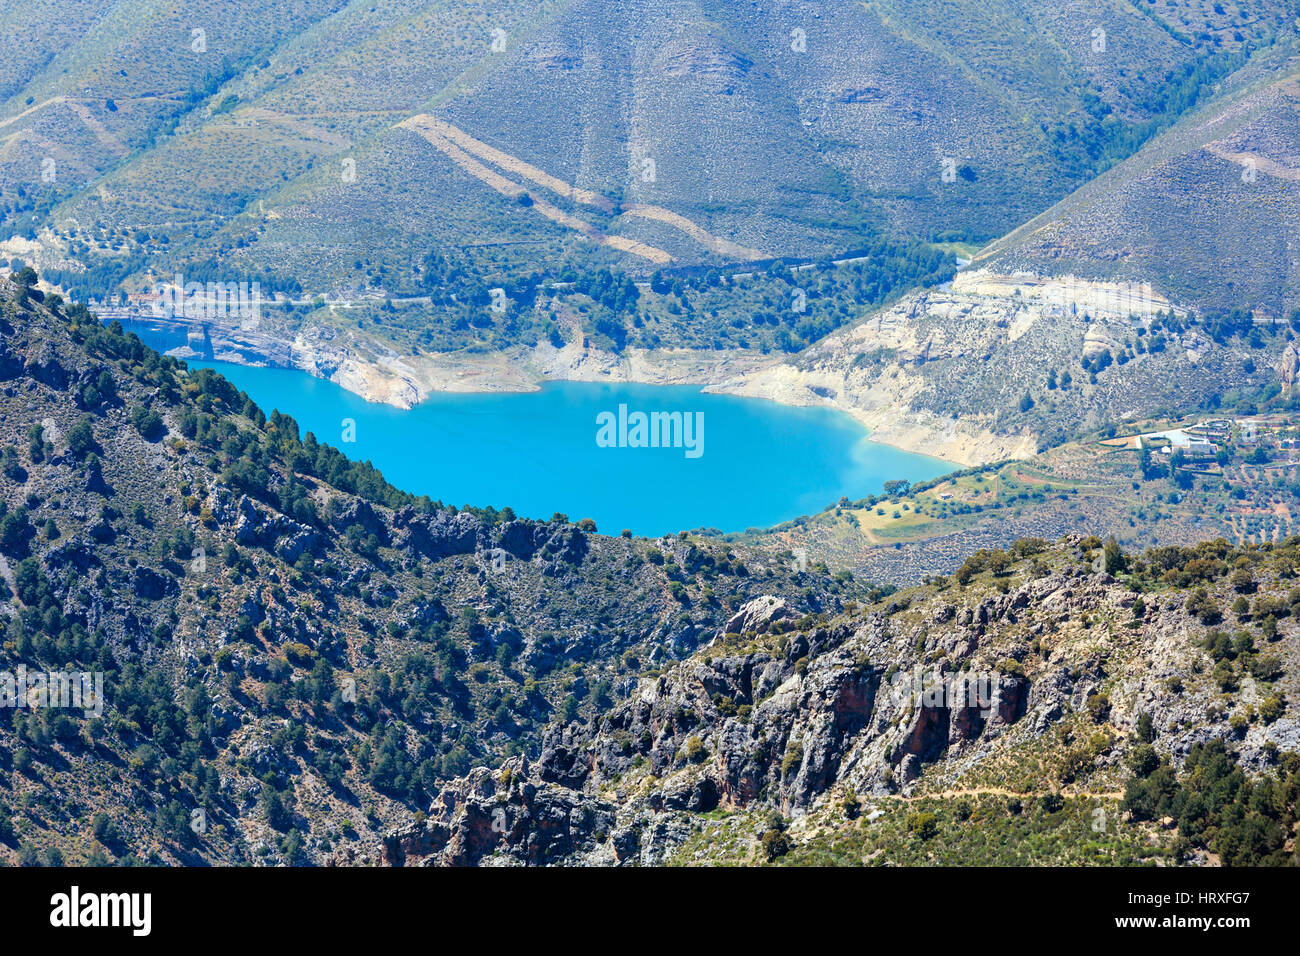 Blue Lake dans le Parc National de la Sierra Nevada, près de Grenade, en Espagne. Paysage de montagne d'été. Banque D'Images